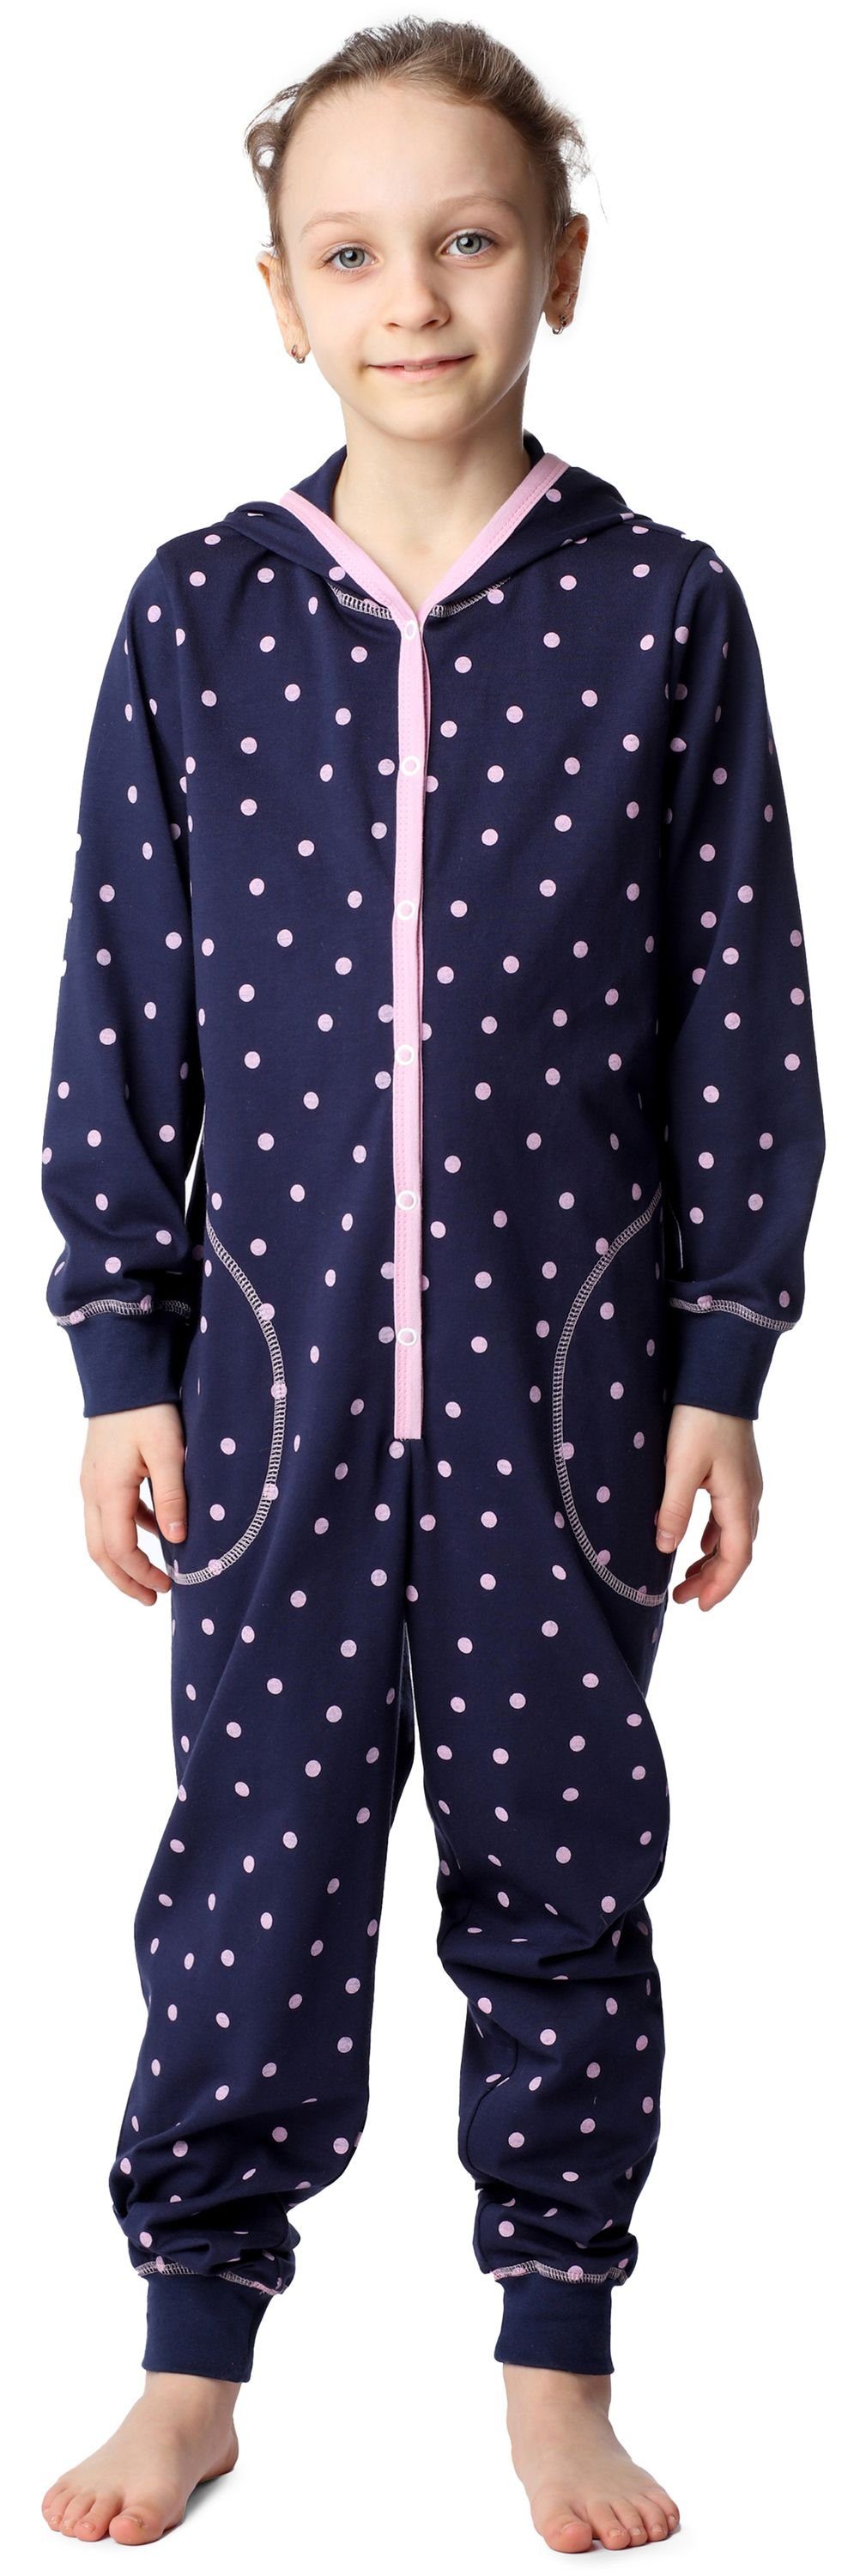 Rosa mit MS10-223 Style Marineblau Mädchen Schlafoverall Merry Punkte Kapuze Schlafanzug